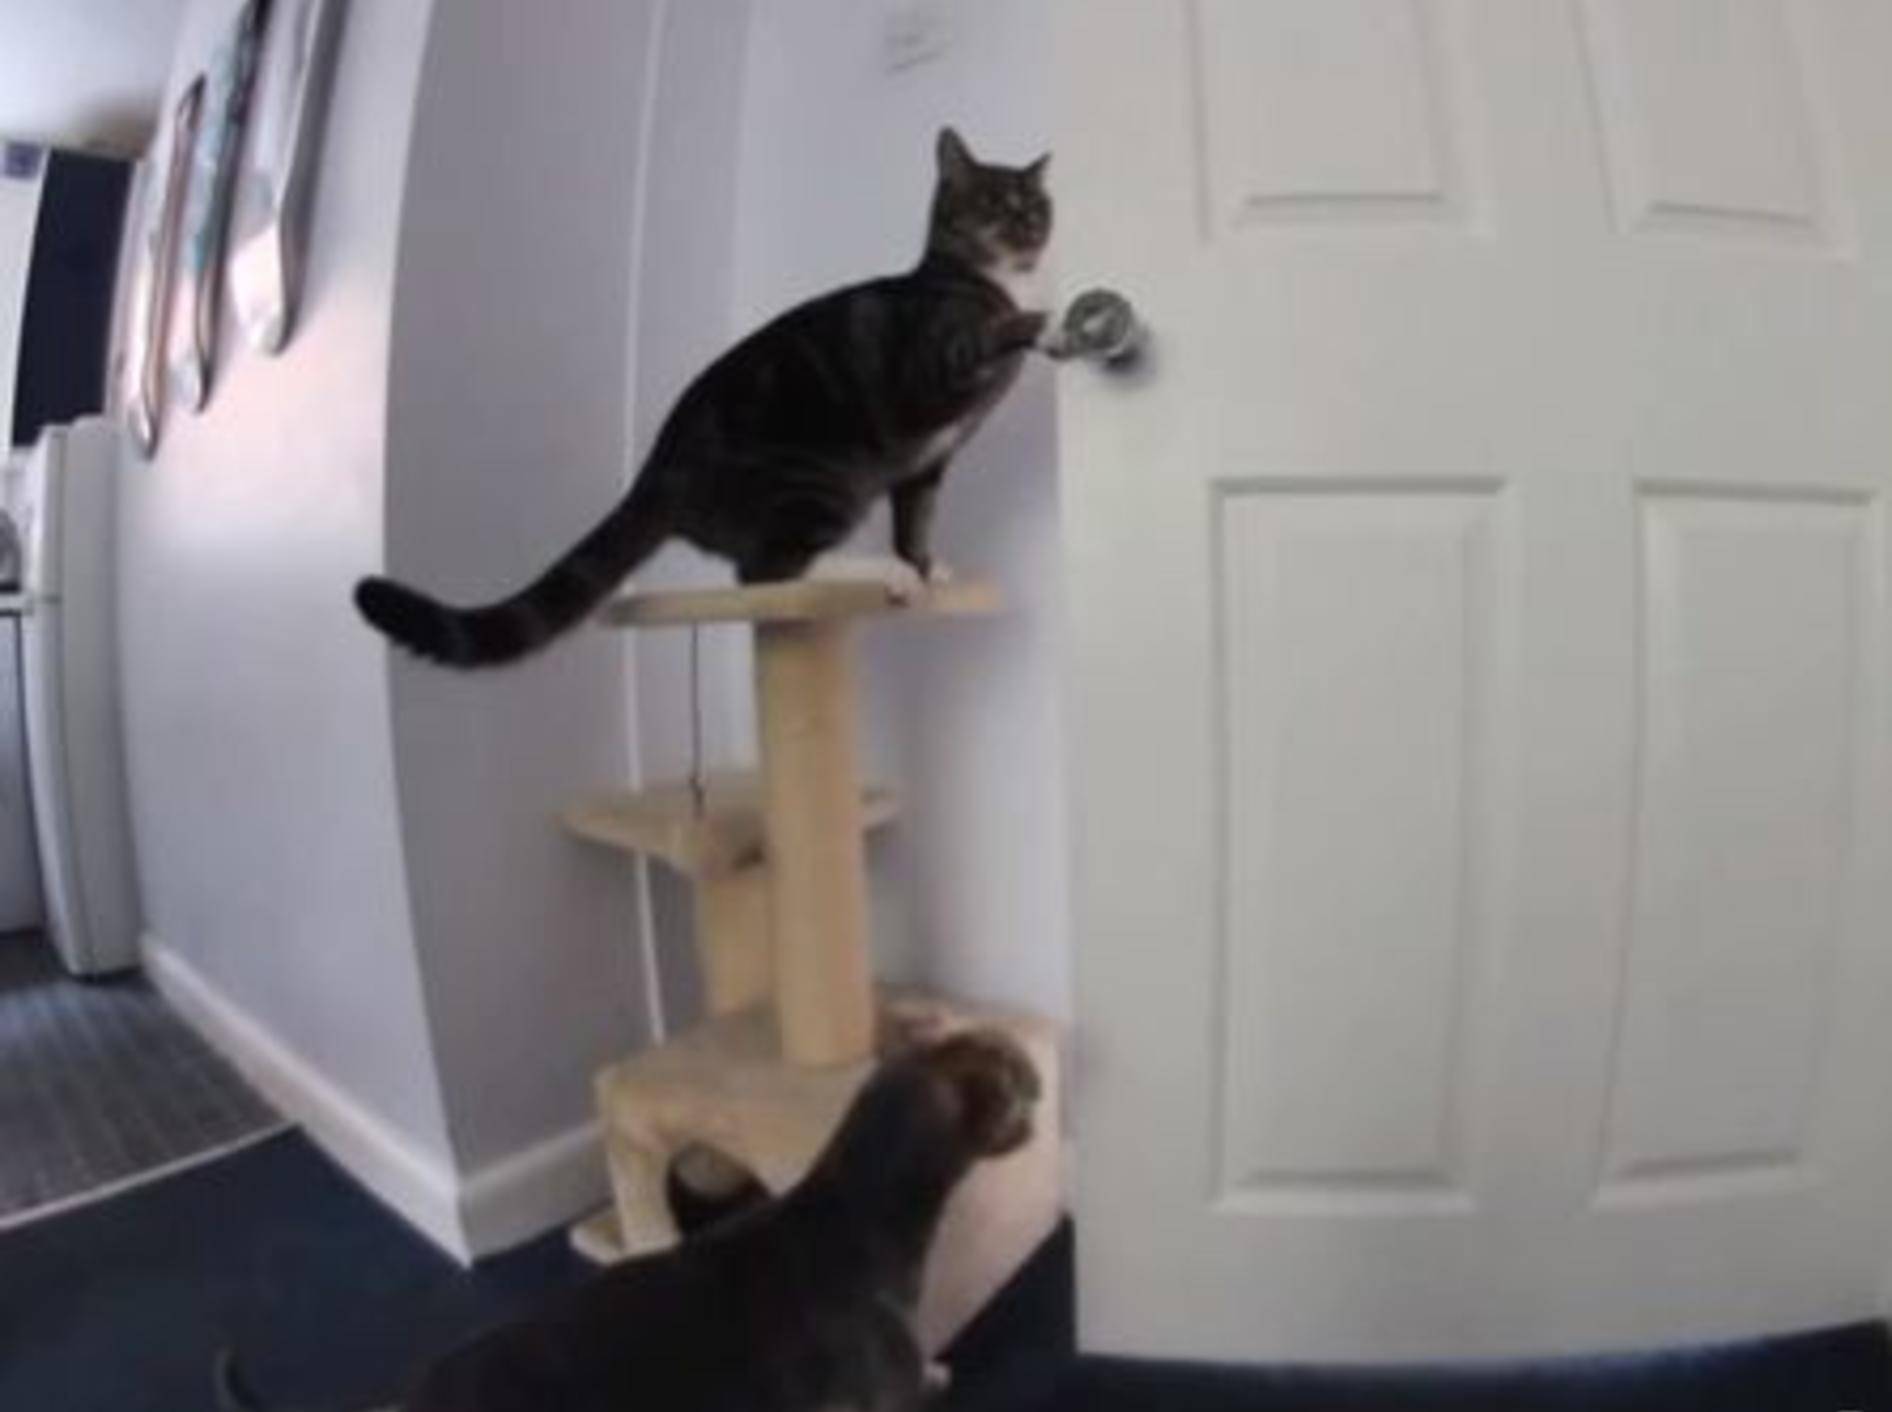 Teamwork: Katze und Hund öffnen die Küchentür - Bild: Youutube / MattHirst